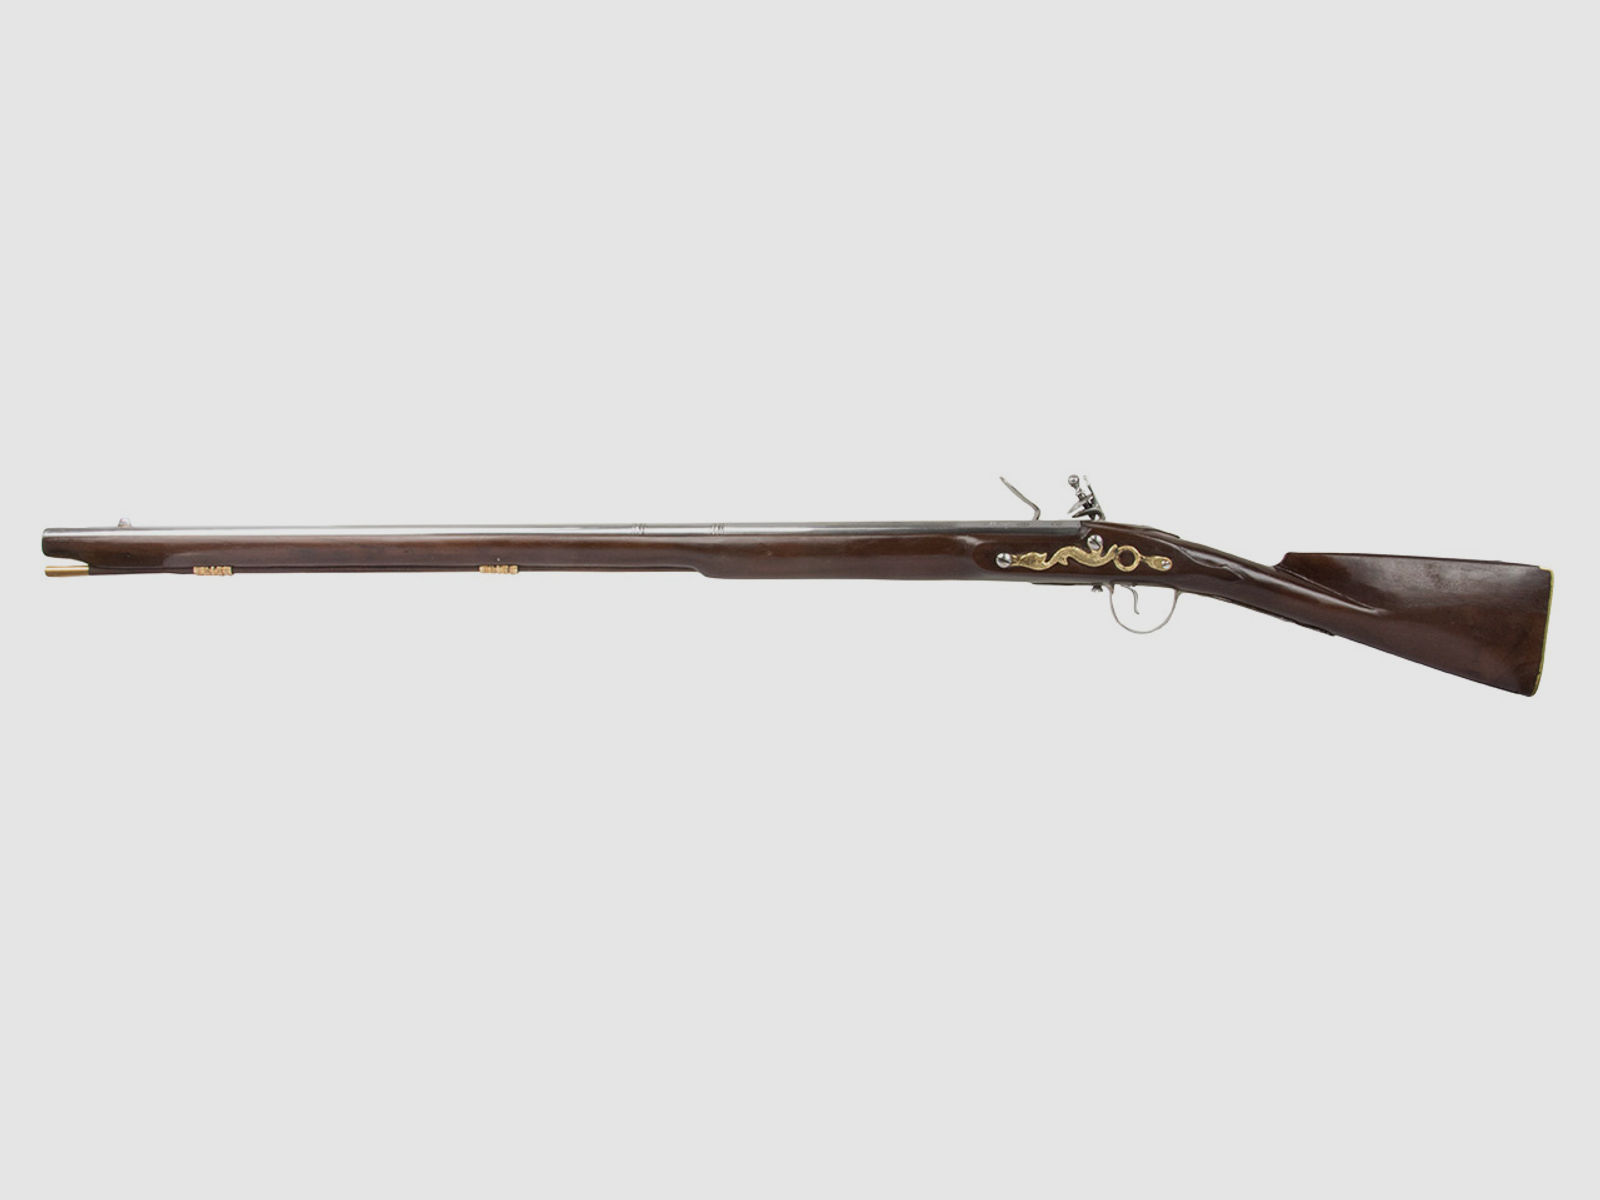 Vorderlader Steinschlossgewehr Trade Muskete 1816 36 Zoll Kaliber .63 bzw. 16 mm (P18)